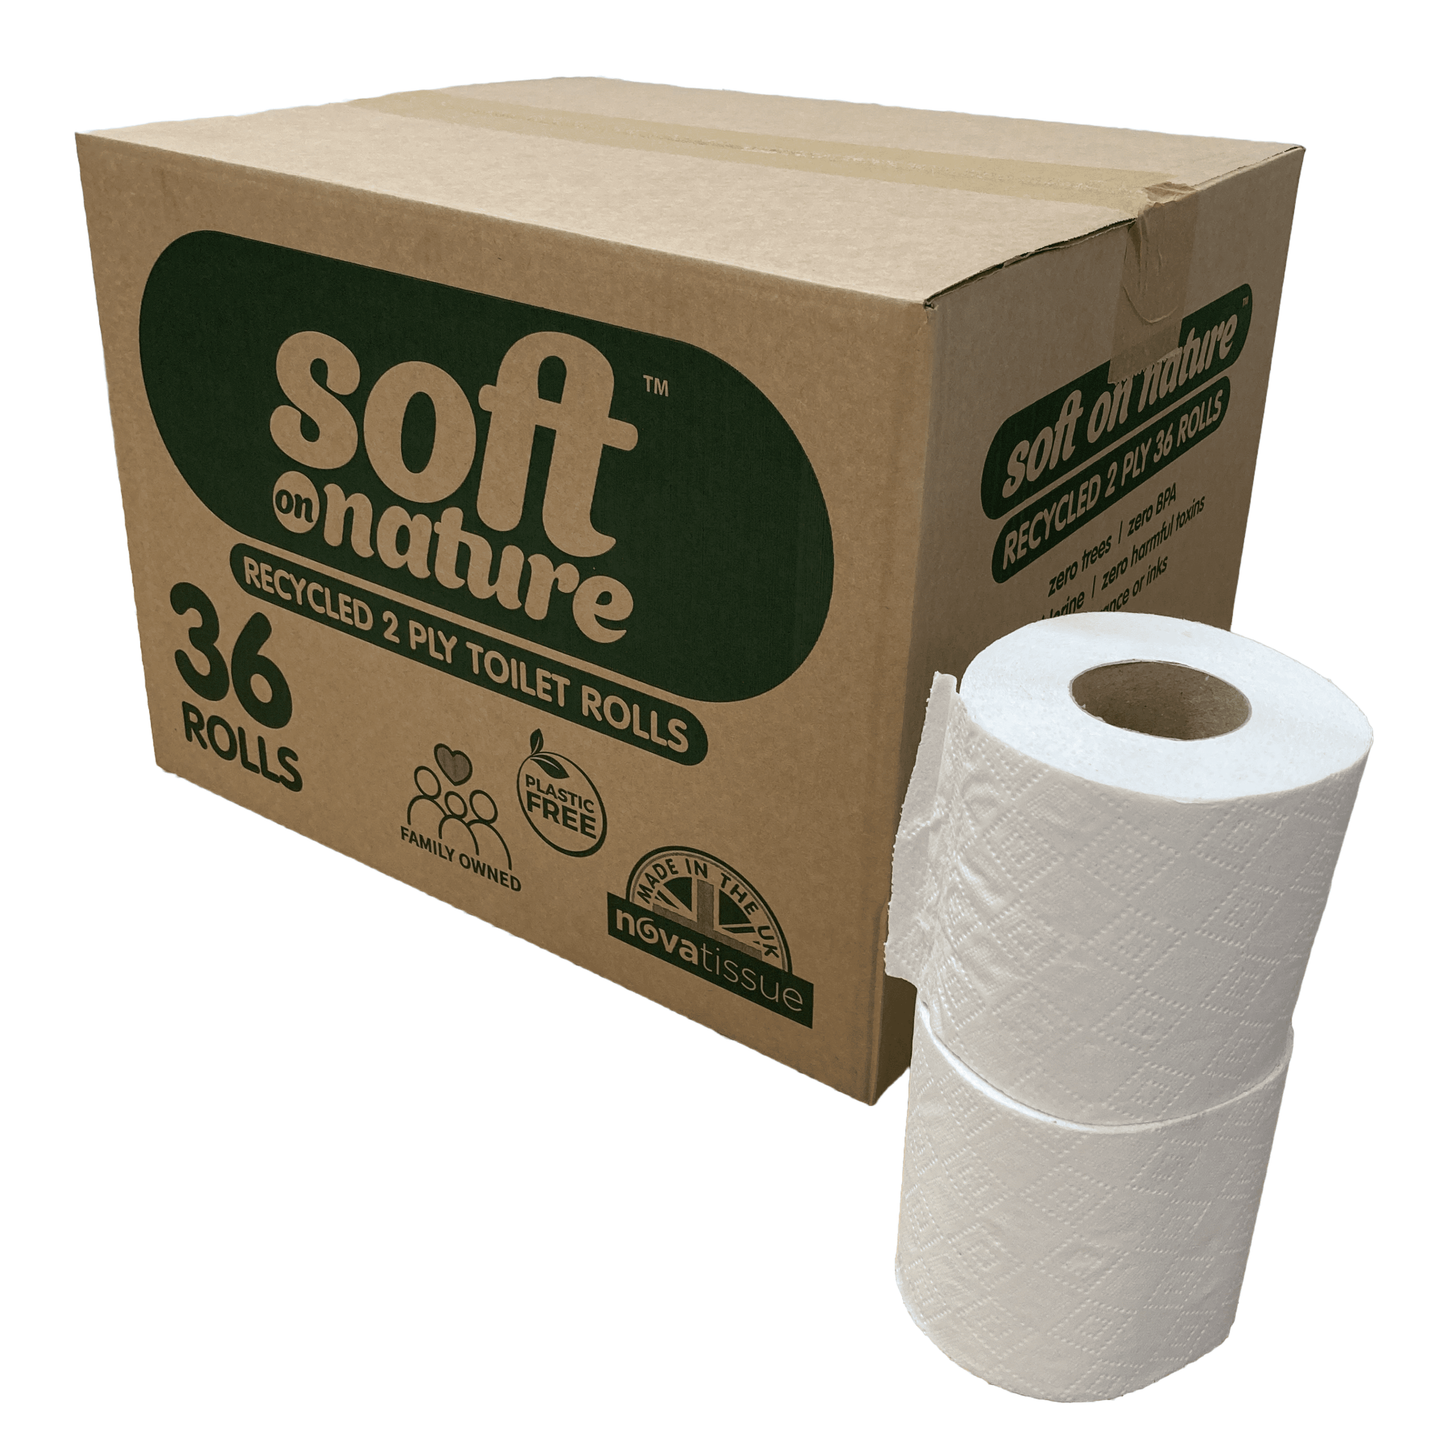 Plastic-free Toilet Rolls & Kitchen Roll